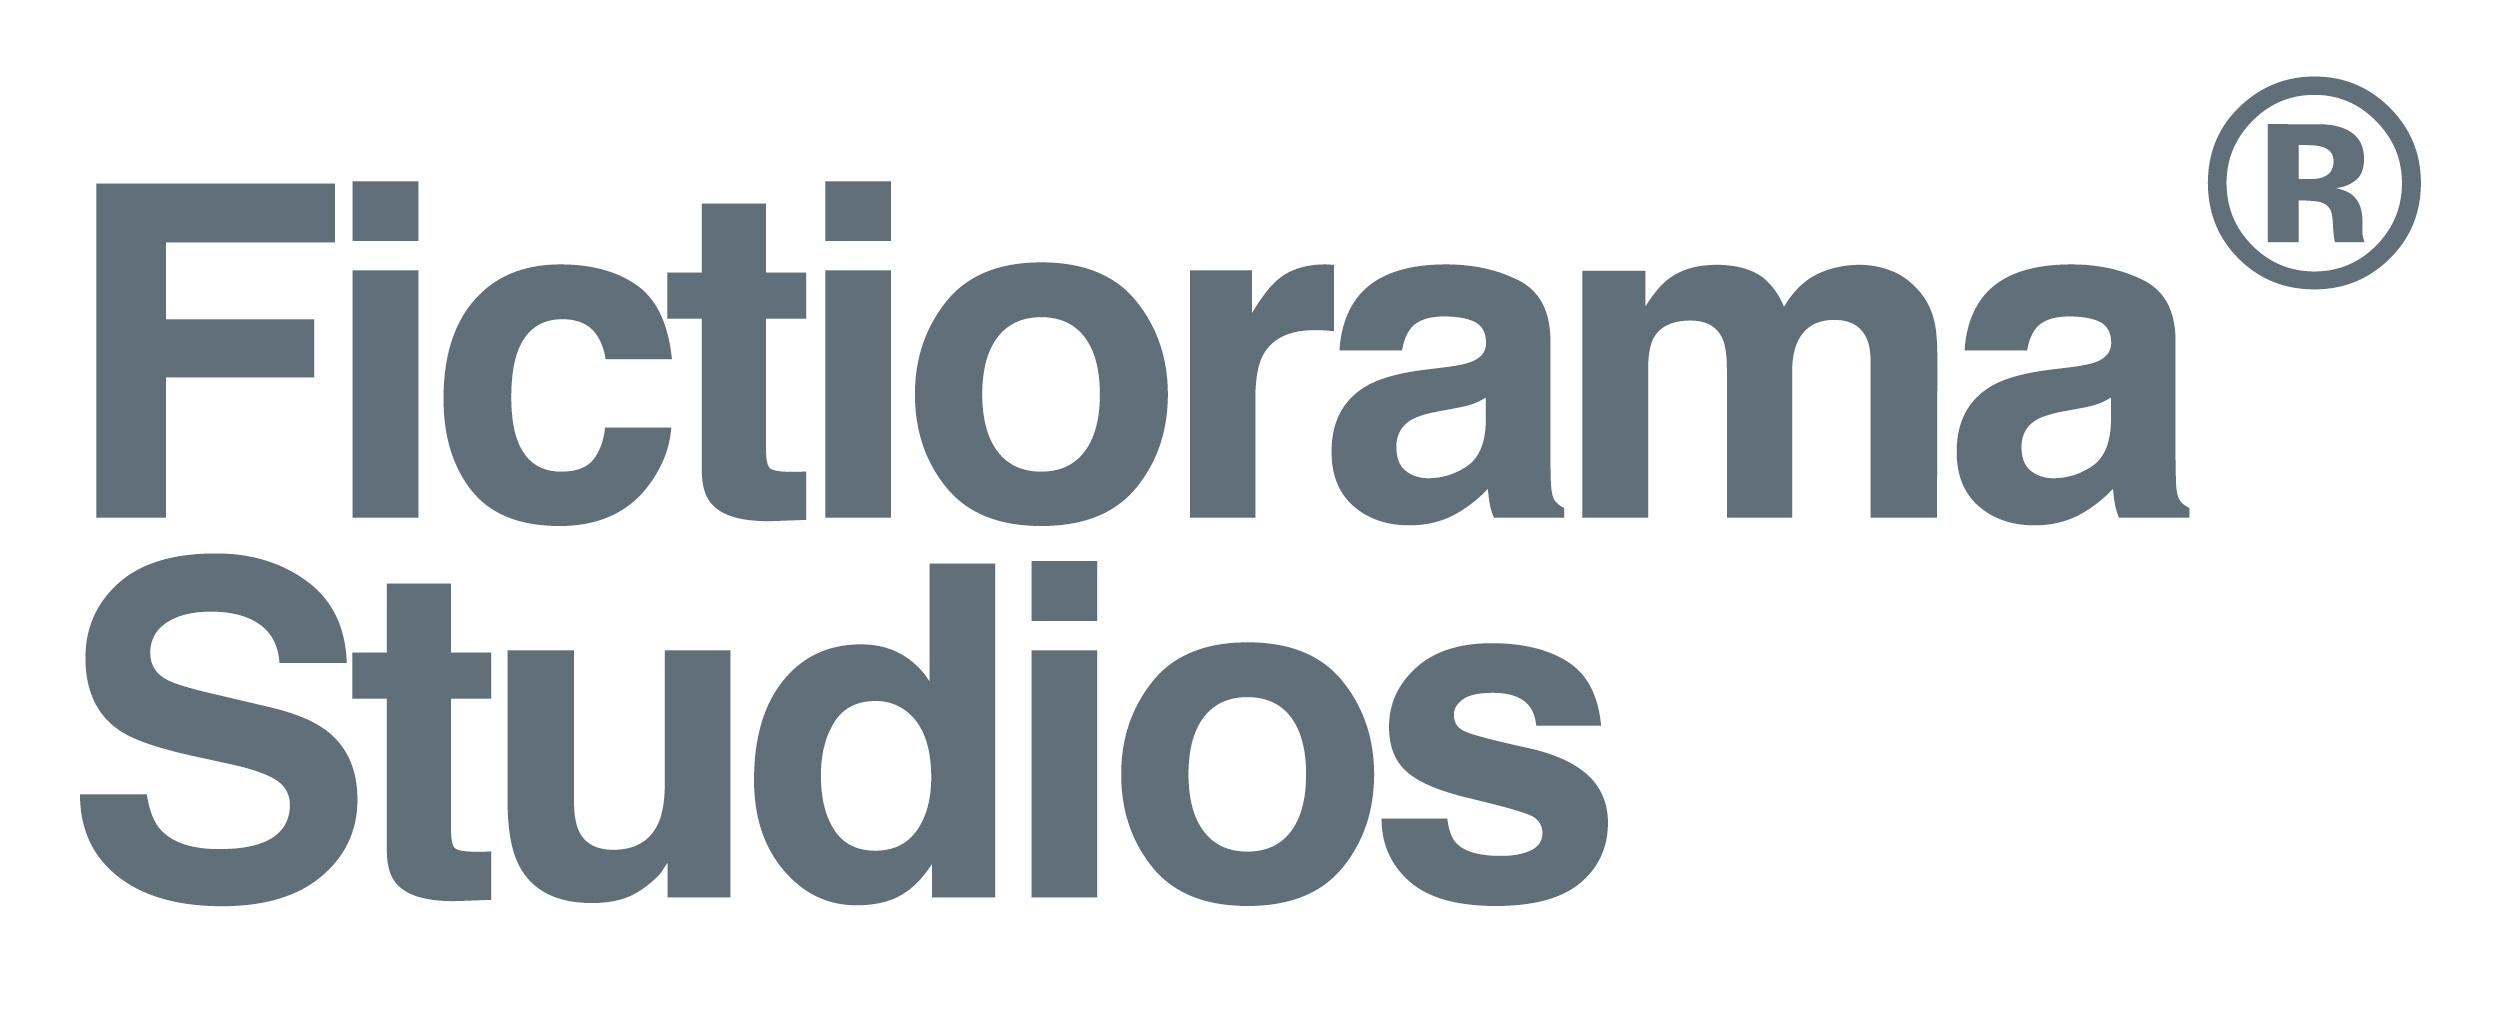 Fictiorama Studios